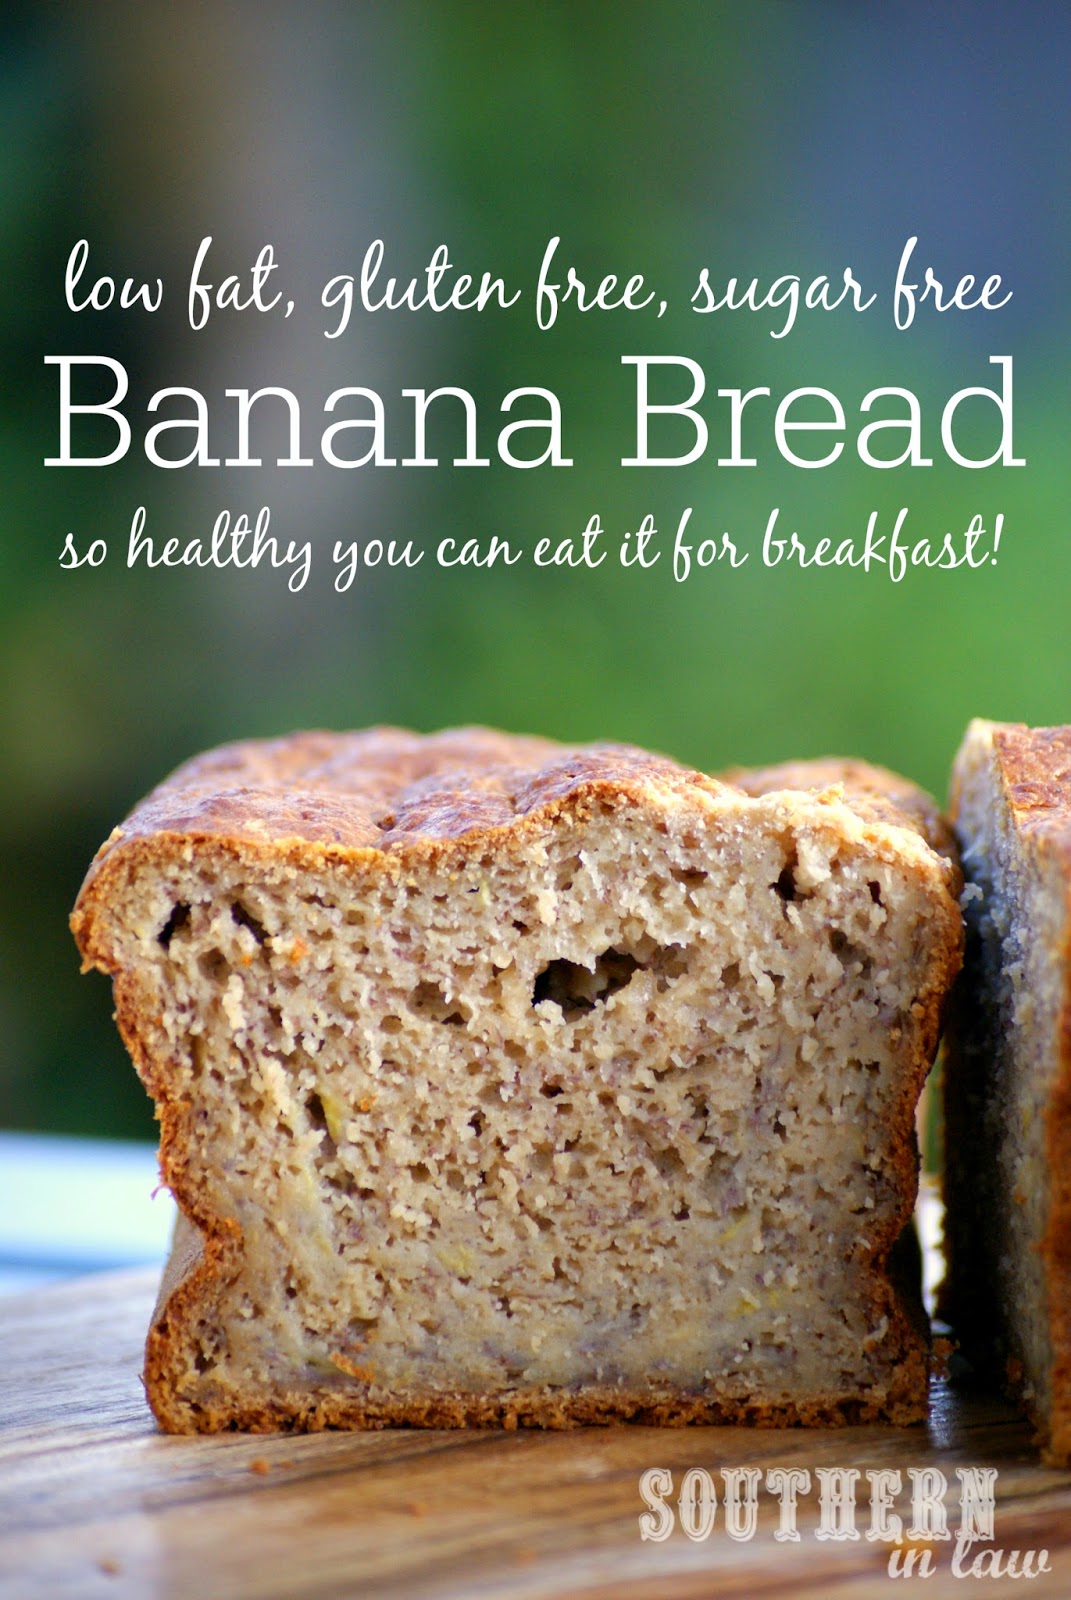 Gluten Free Banana Bread Recipe - low fat, gluten free, sugar free, healthy, clean eating friendly, breakfast banana bread